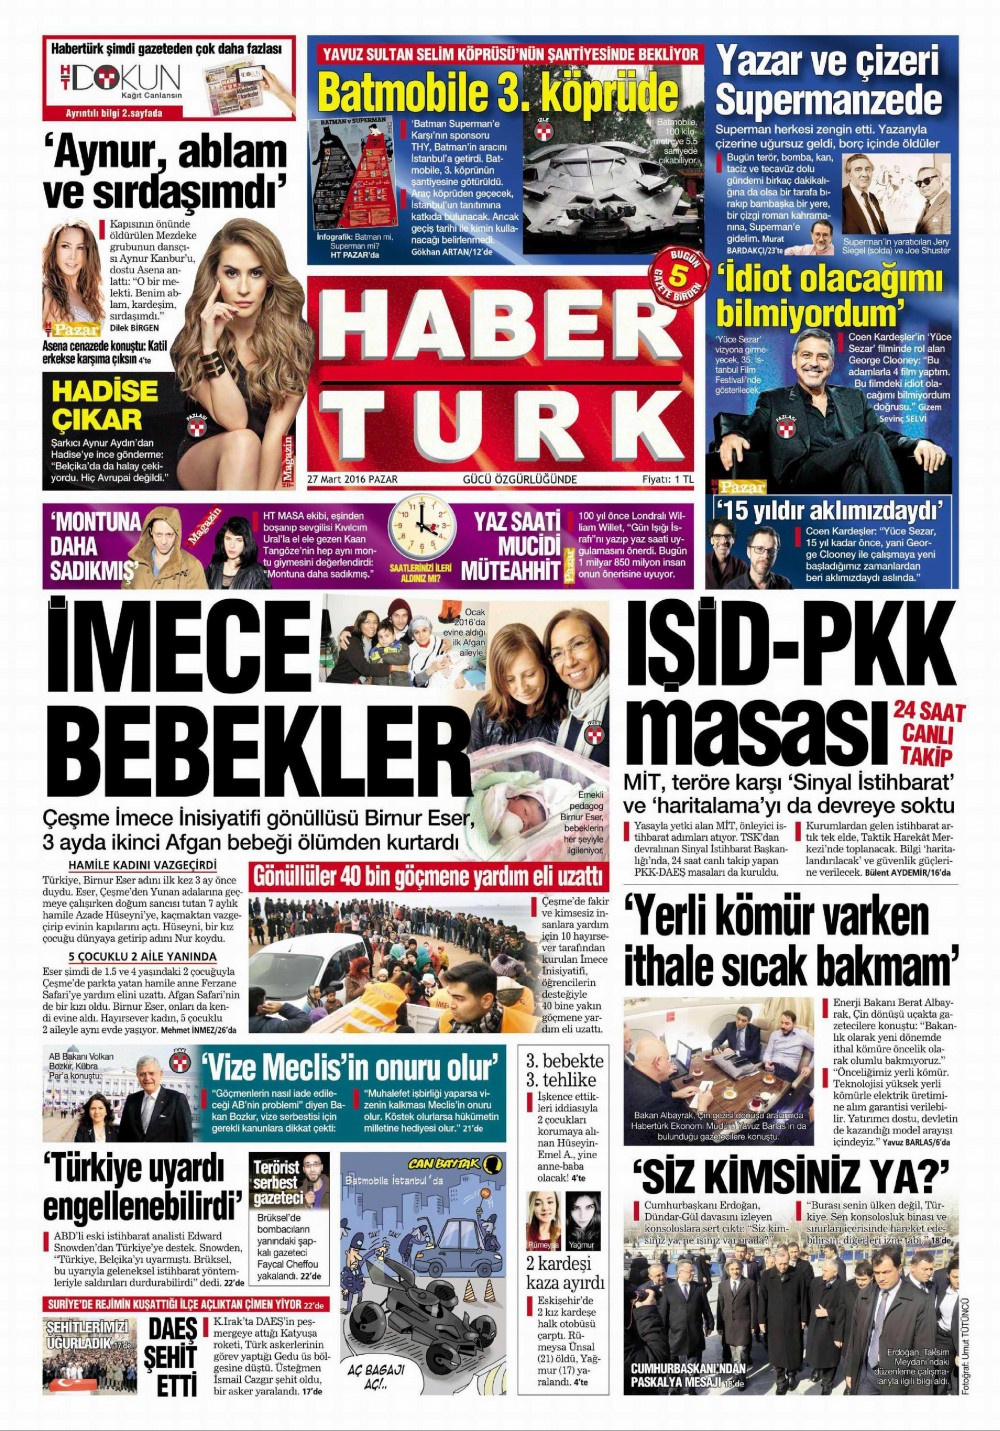 Gazete manşetleri Hürriyet - Milliyet ve Star ne yazdı?